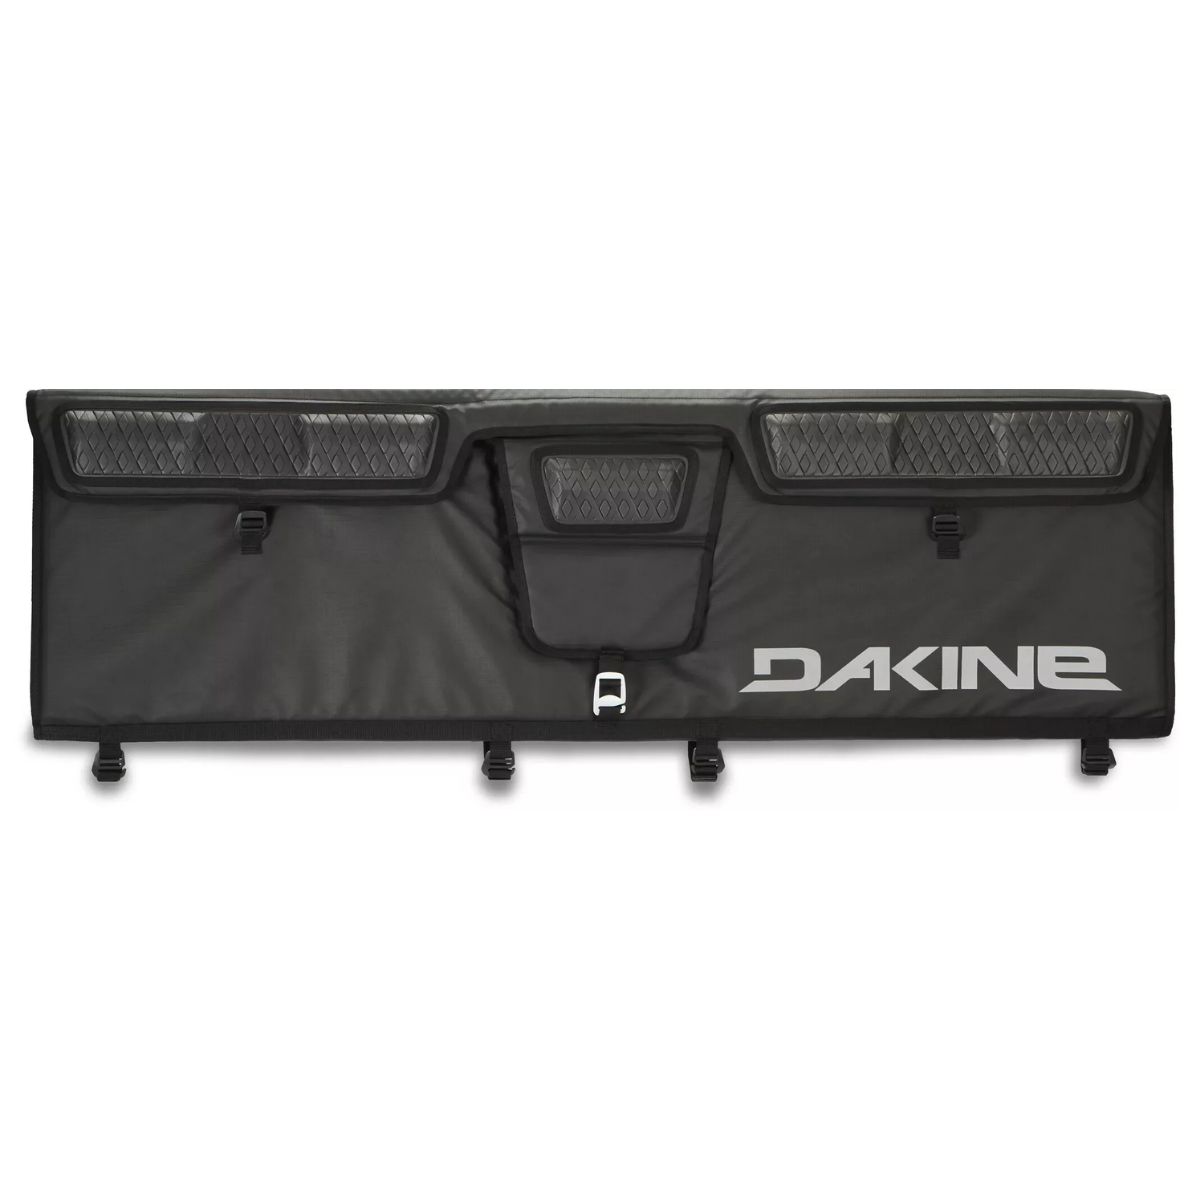 Protecteur pour boite de camion Dakine Universal Pickup Pad Large Noir